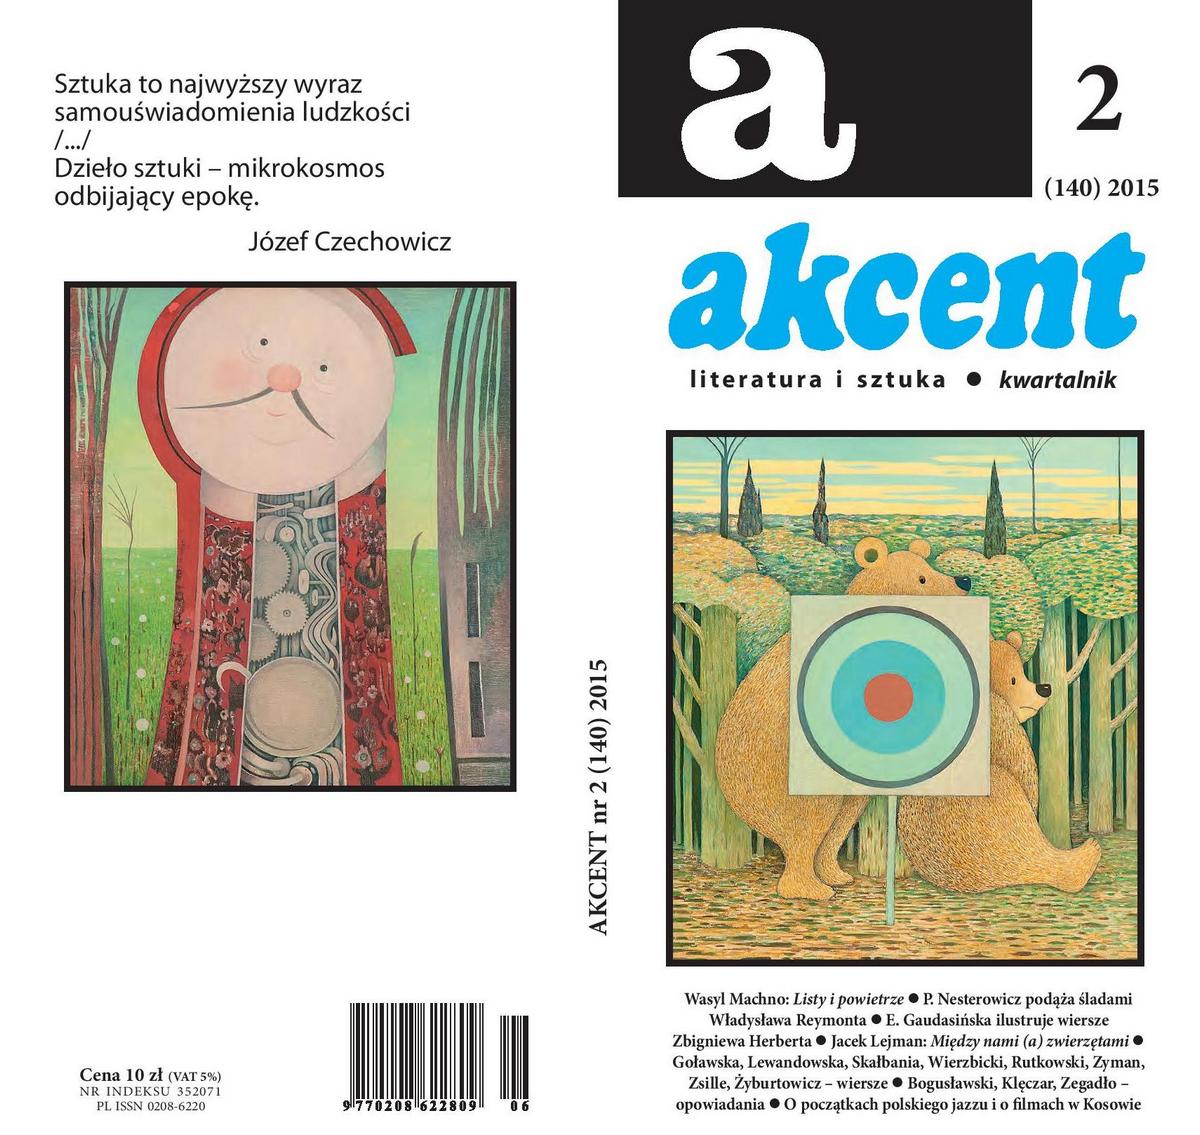 Kwartalnik „Akcent” – okładka (źródło: materiały prasowe wydawcy)